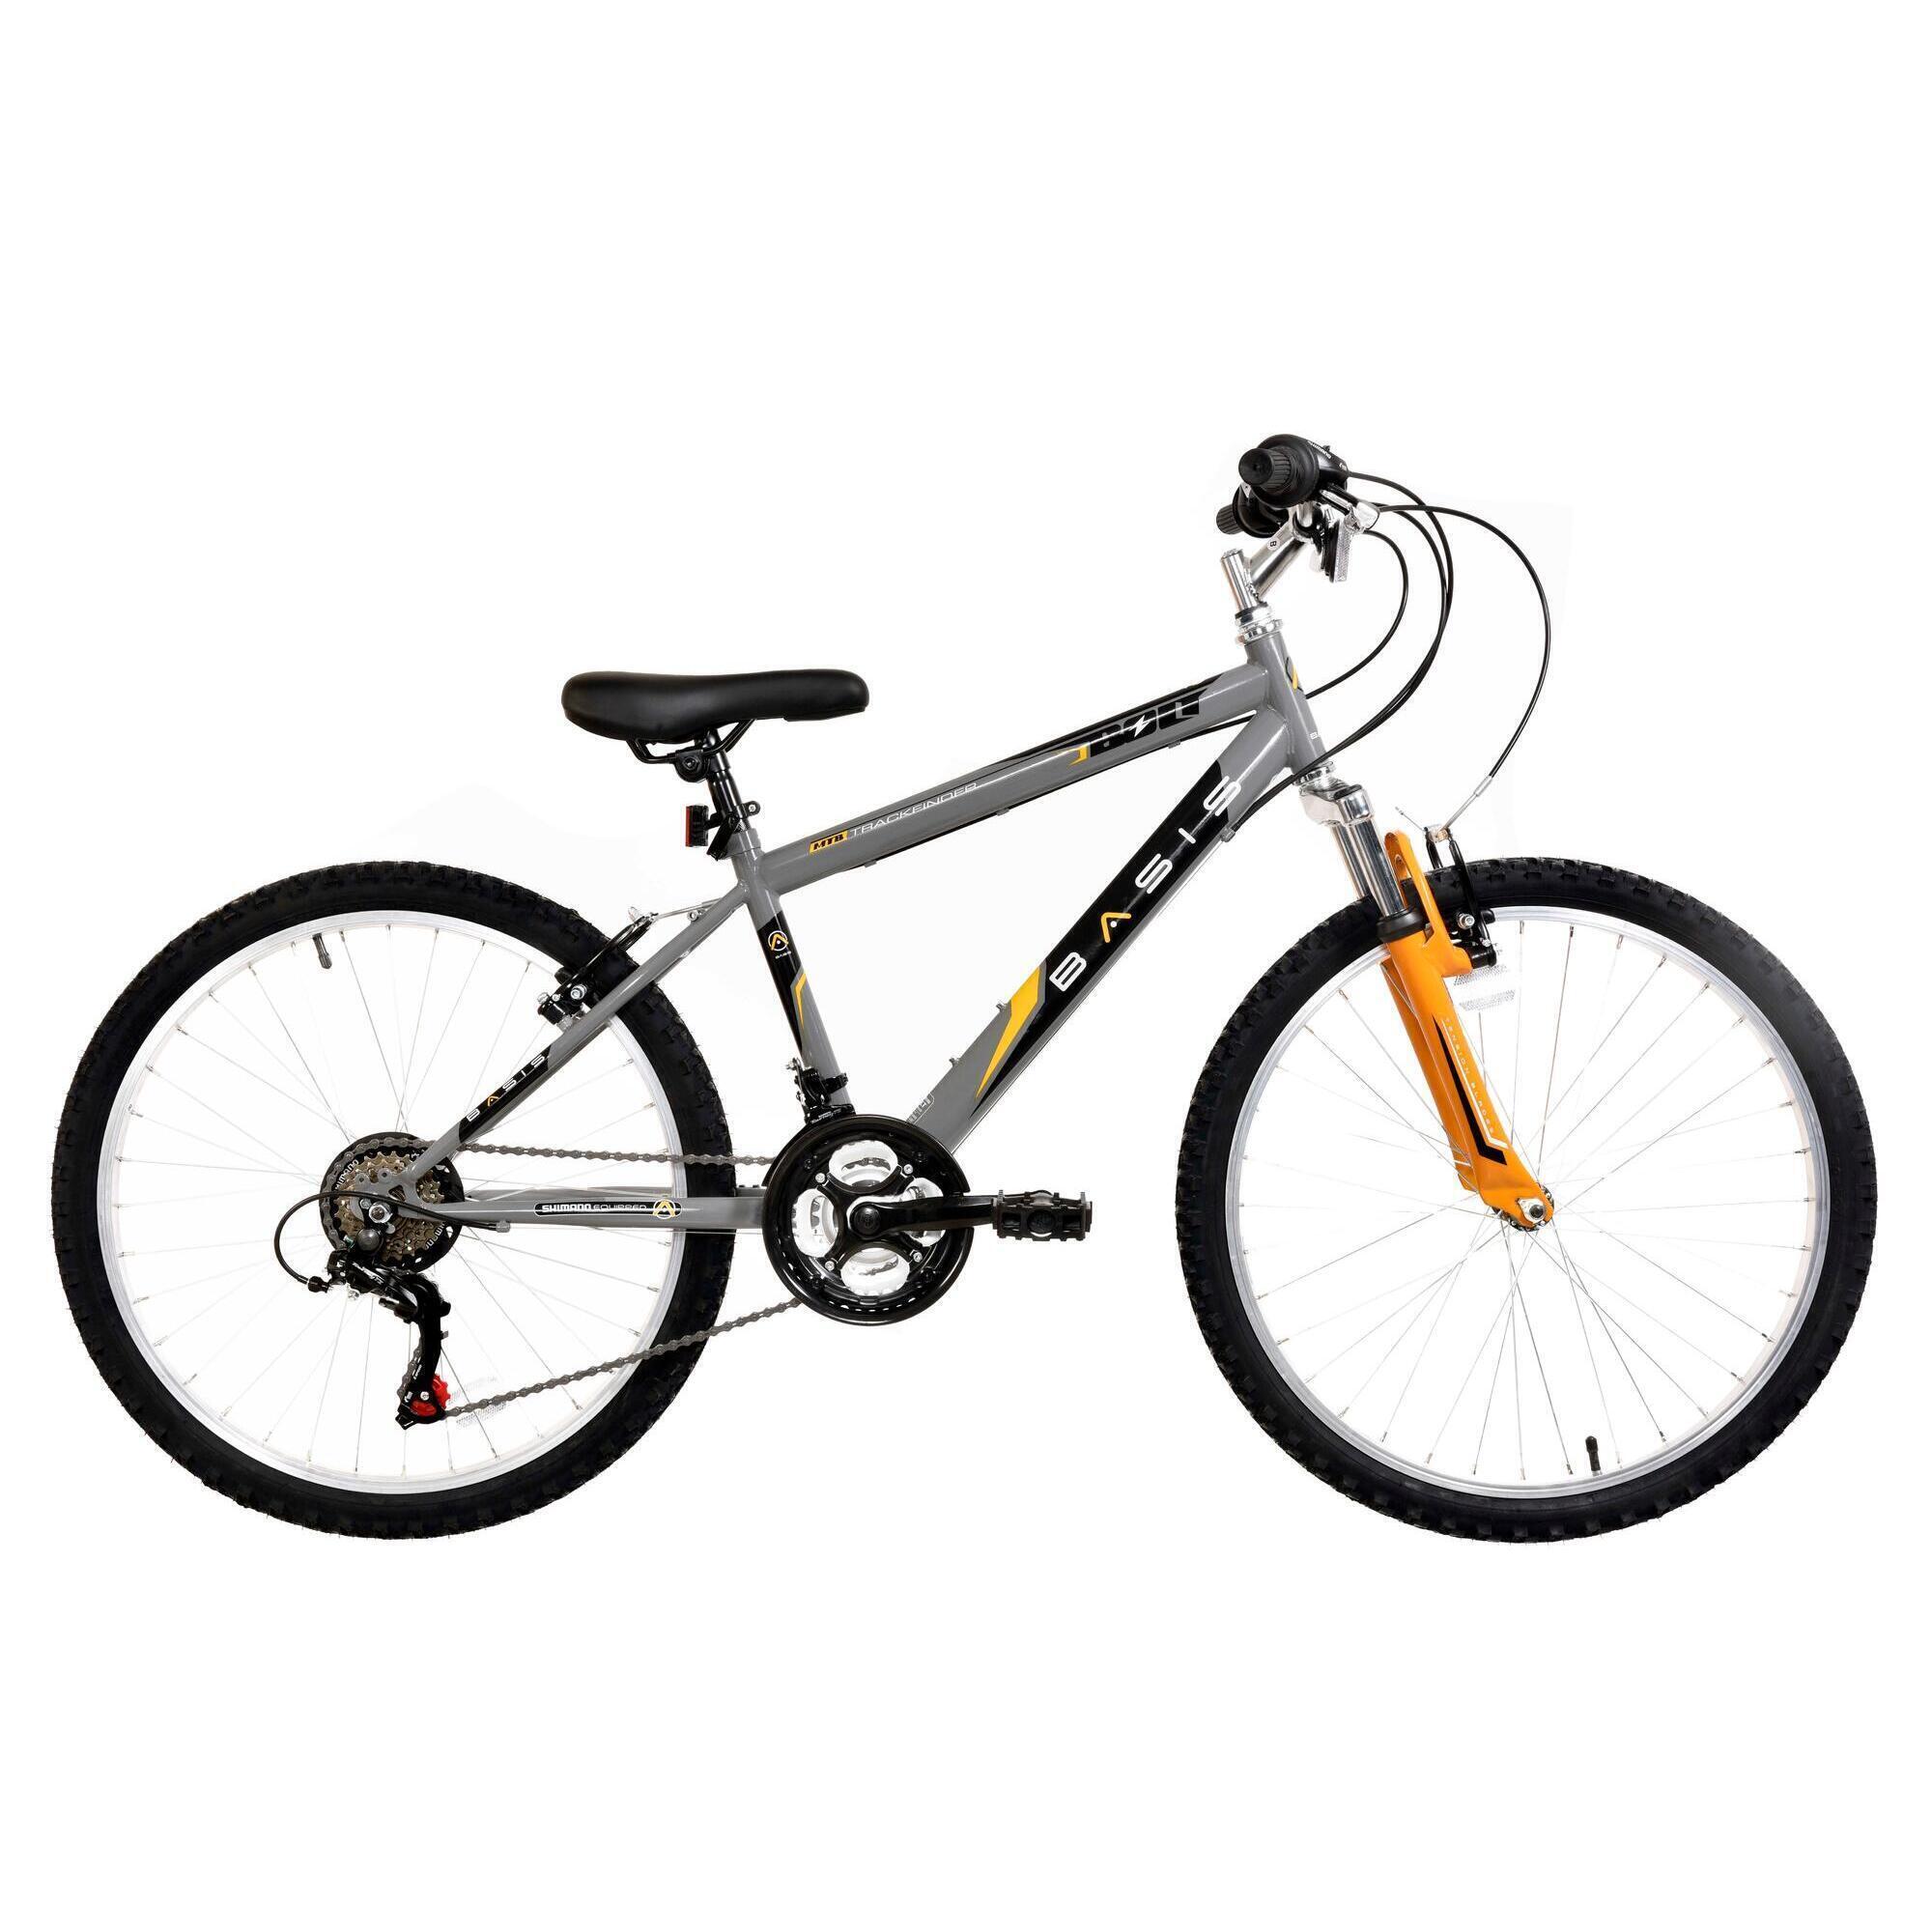 BASIS Basis Bolt Boys Hardtail Mountain Bike, 24In Wheel, 18 Speed - Grey/Orange